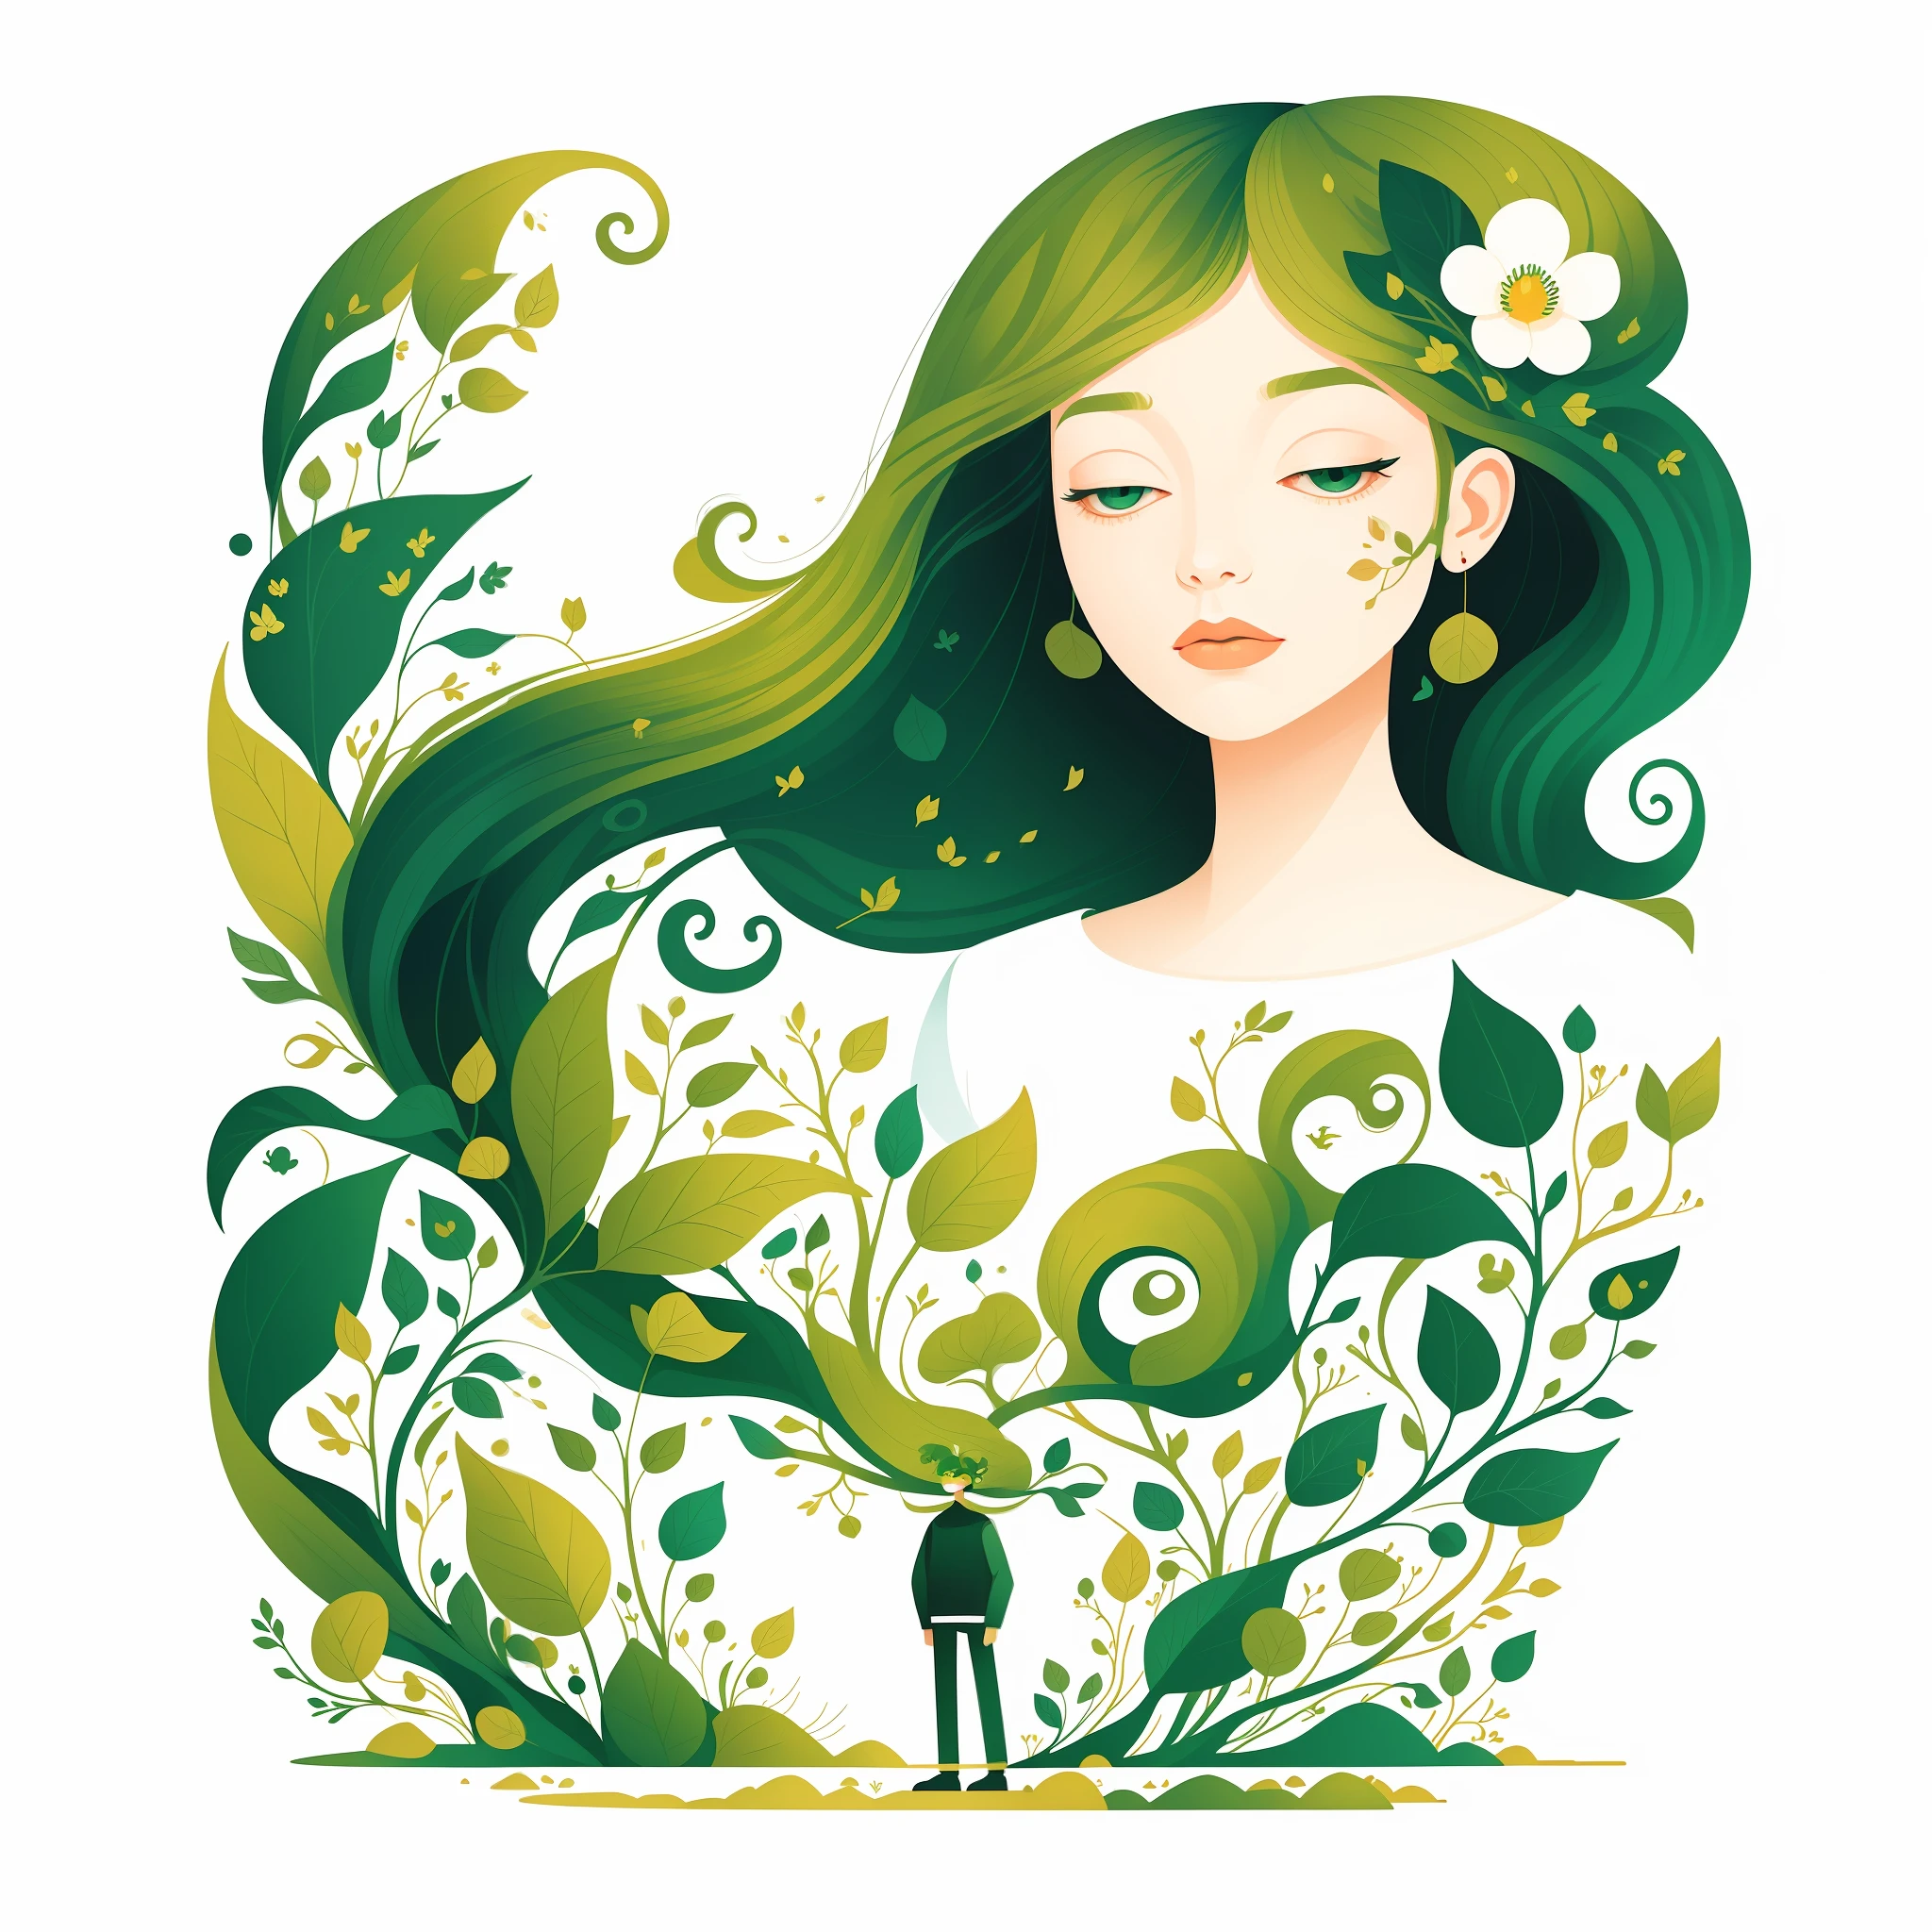 (Иллюстрация:1.3) зеленый человек,  Изолированные на пустом чисто белом фоне(3)(художница Анна Диттман:1), (((шедевр))), (((Лучшее качество))),((очень нежный и красивый)), Плоская иллюстрация